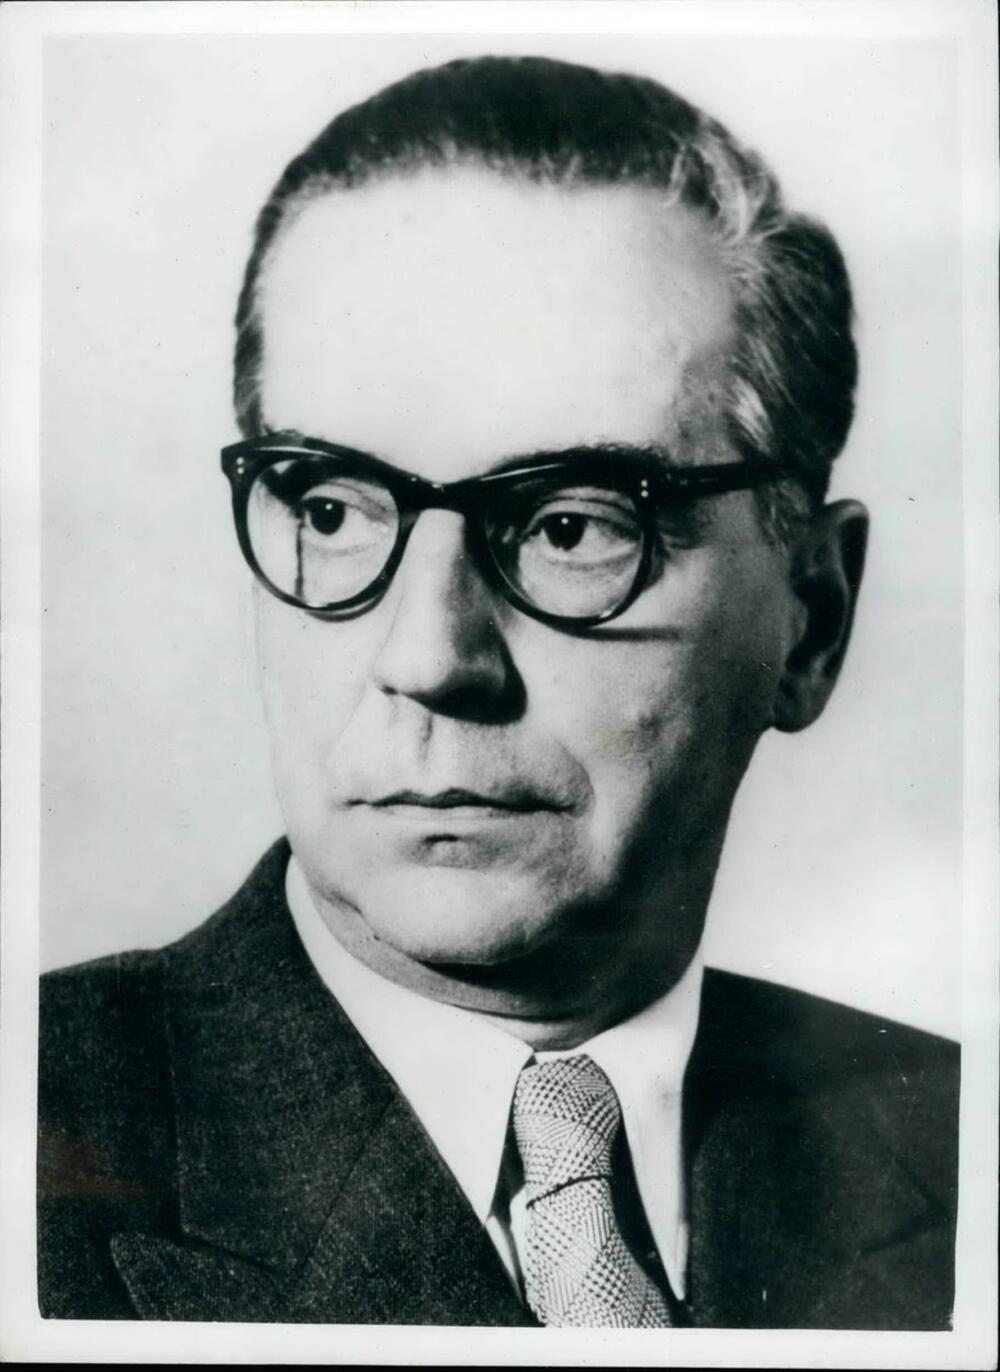 Ivo Andrić